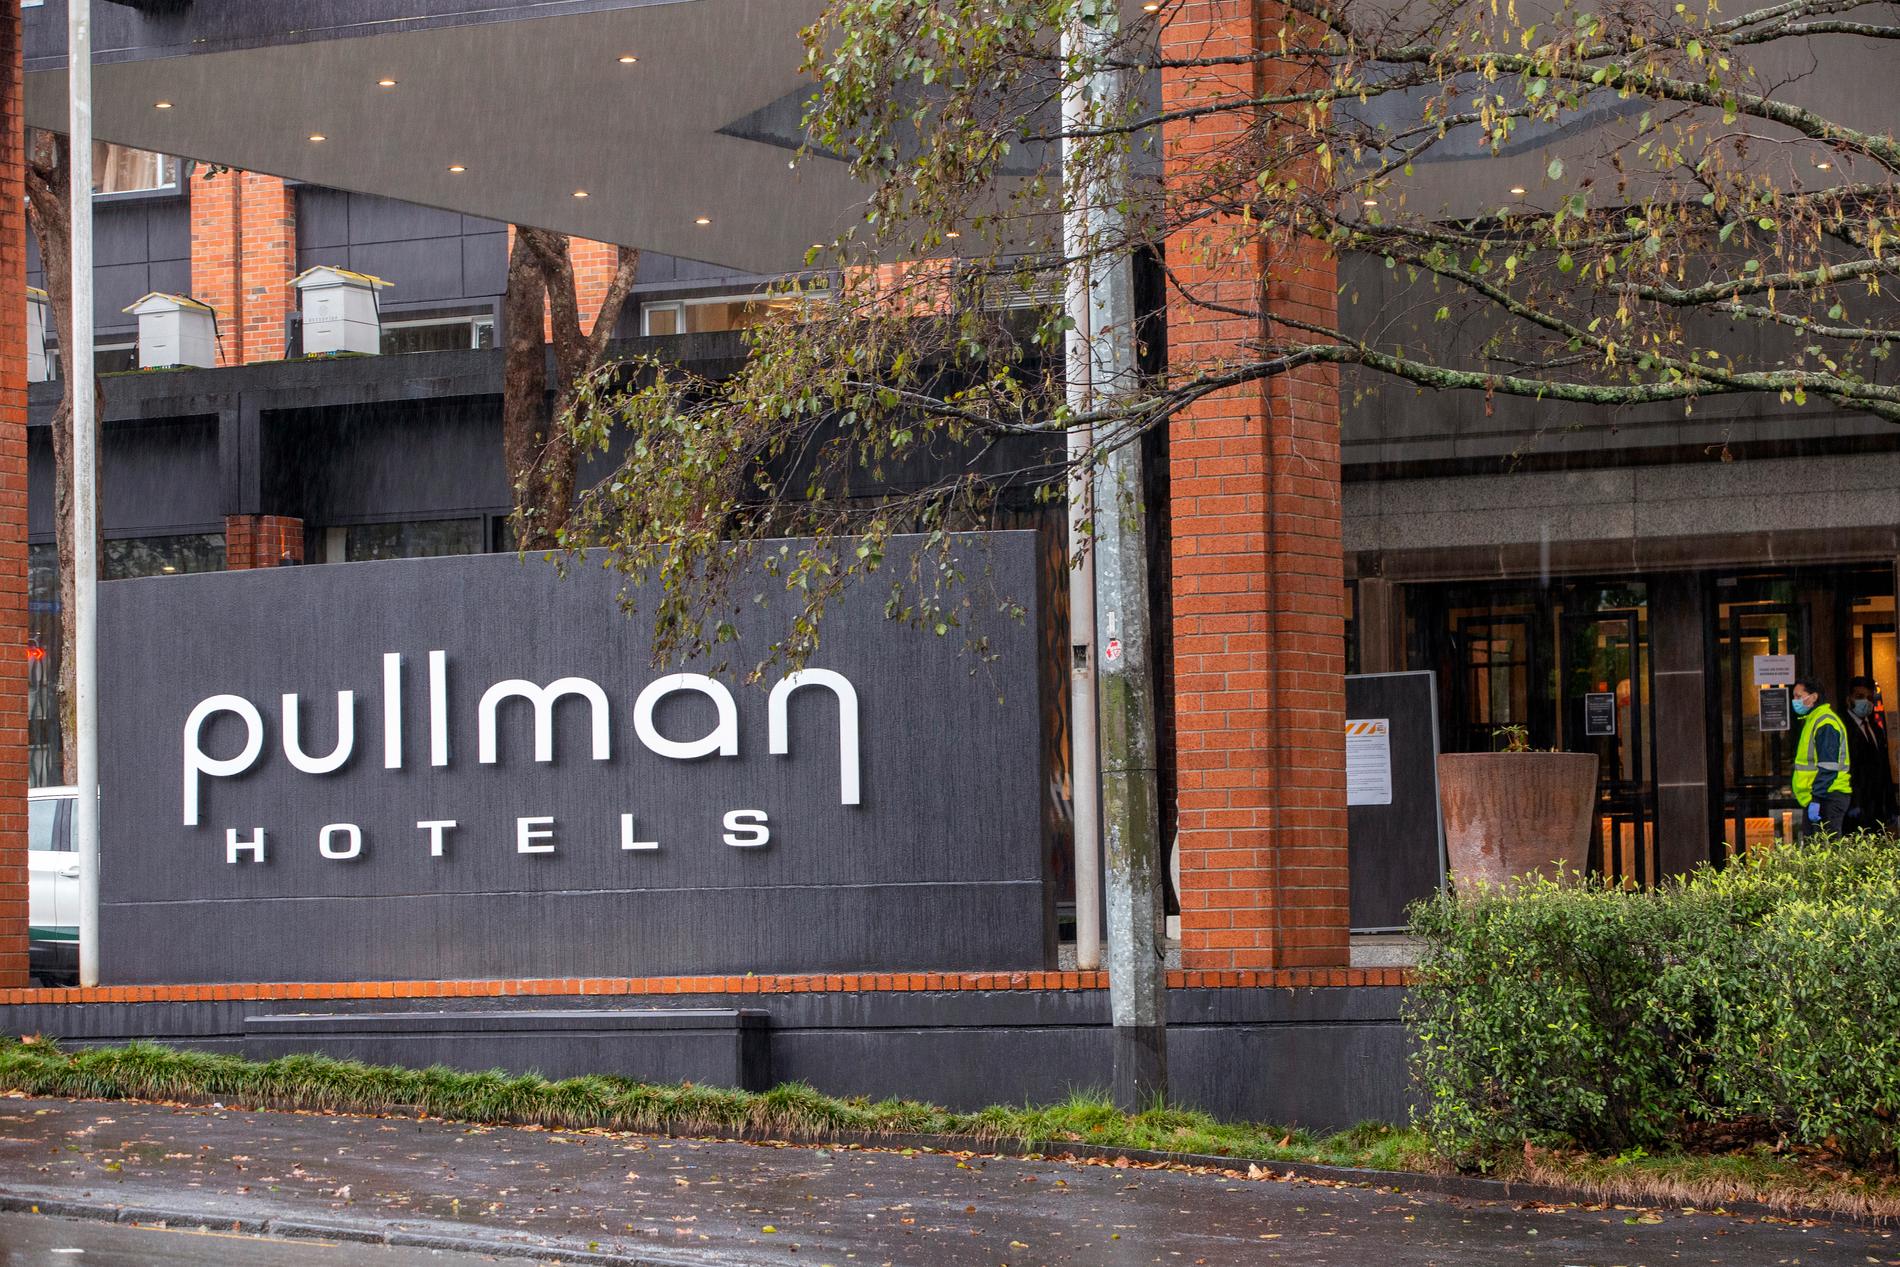 Pullman Hotel i Auckland är ett hotell dit personer som anländer till Nya Zeeland sitter två veckor i karantän innan de släpps ut i samhället. Arkivbild.